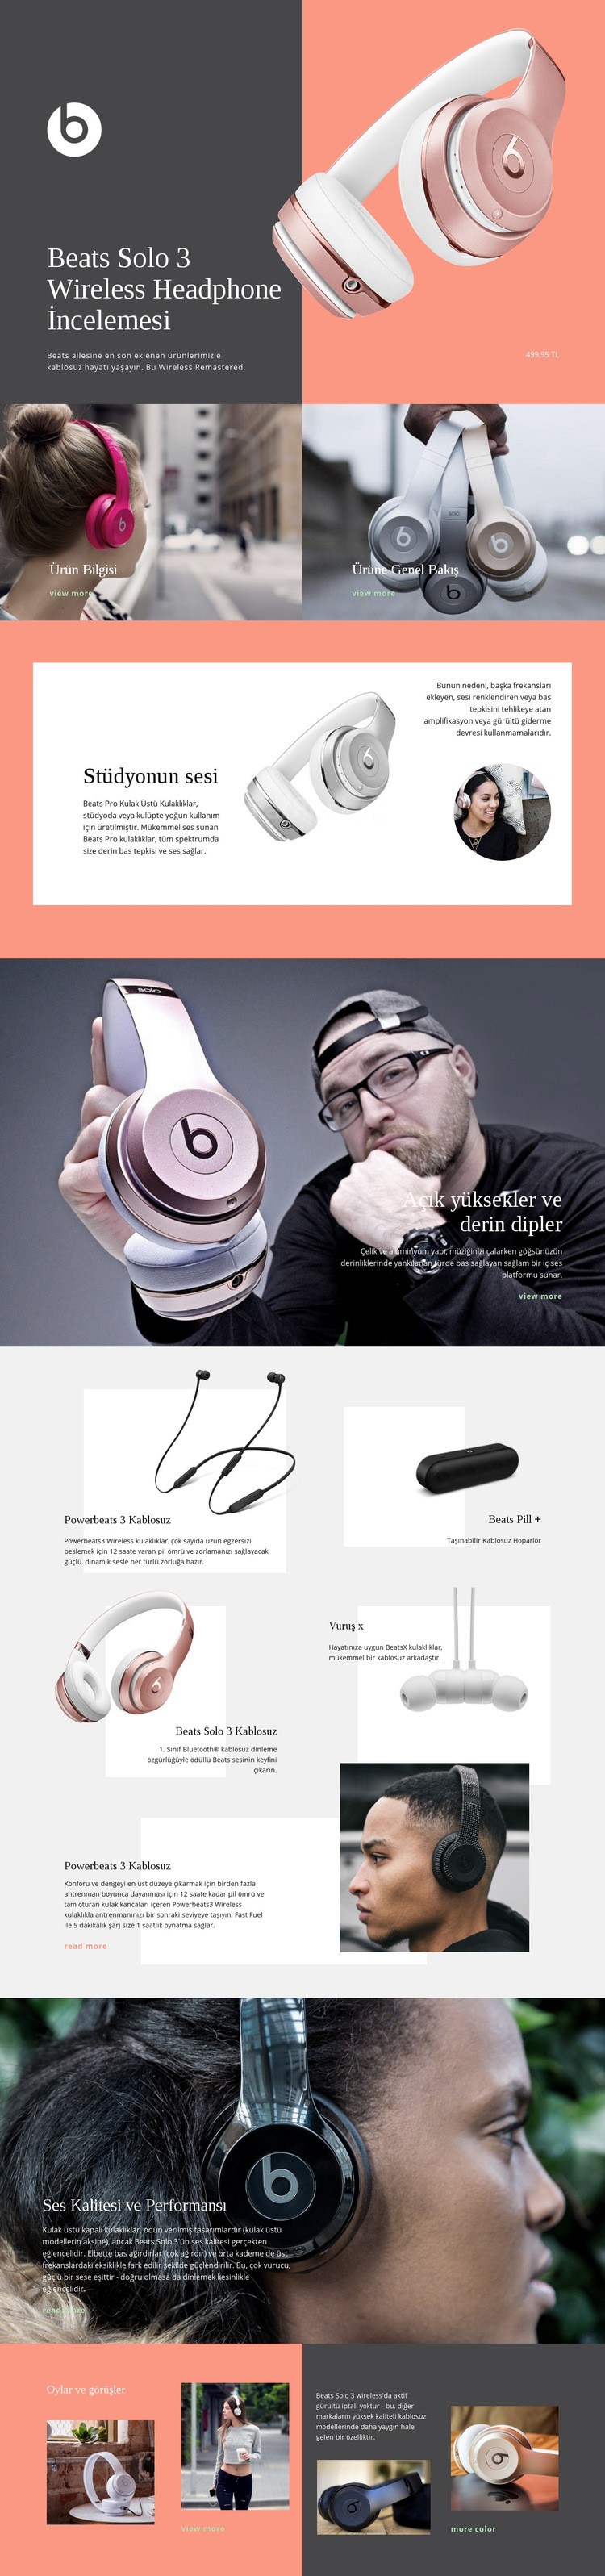 Beats Wireless Web sitesi tasarımı